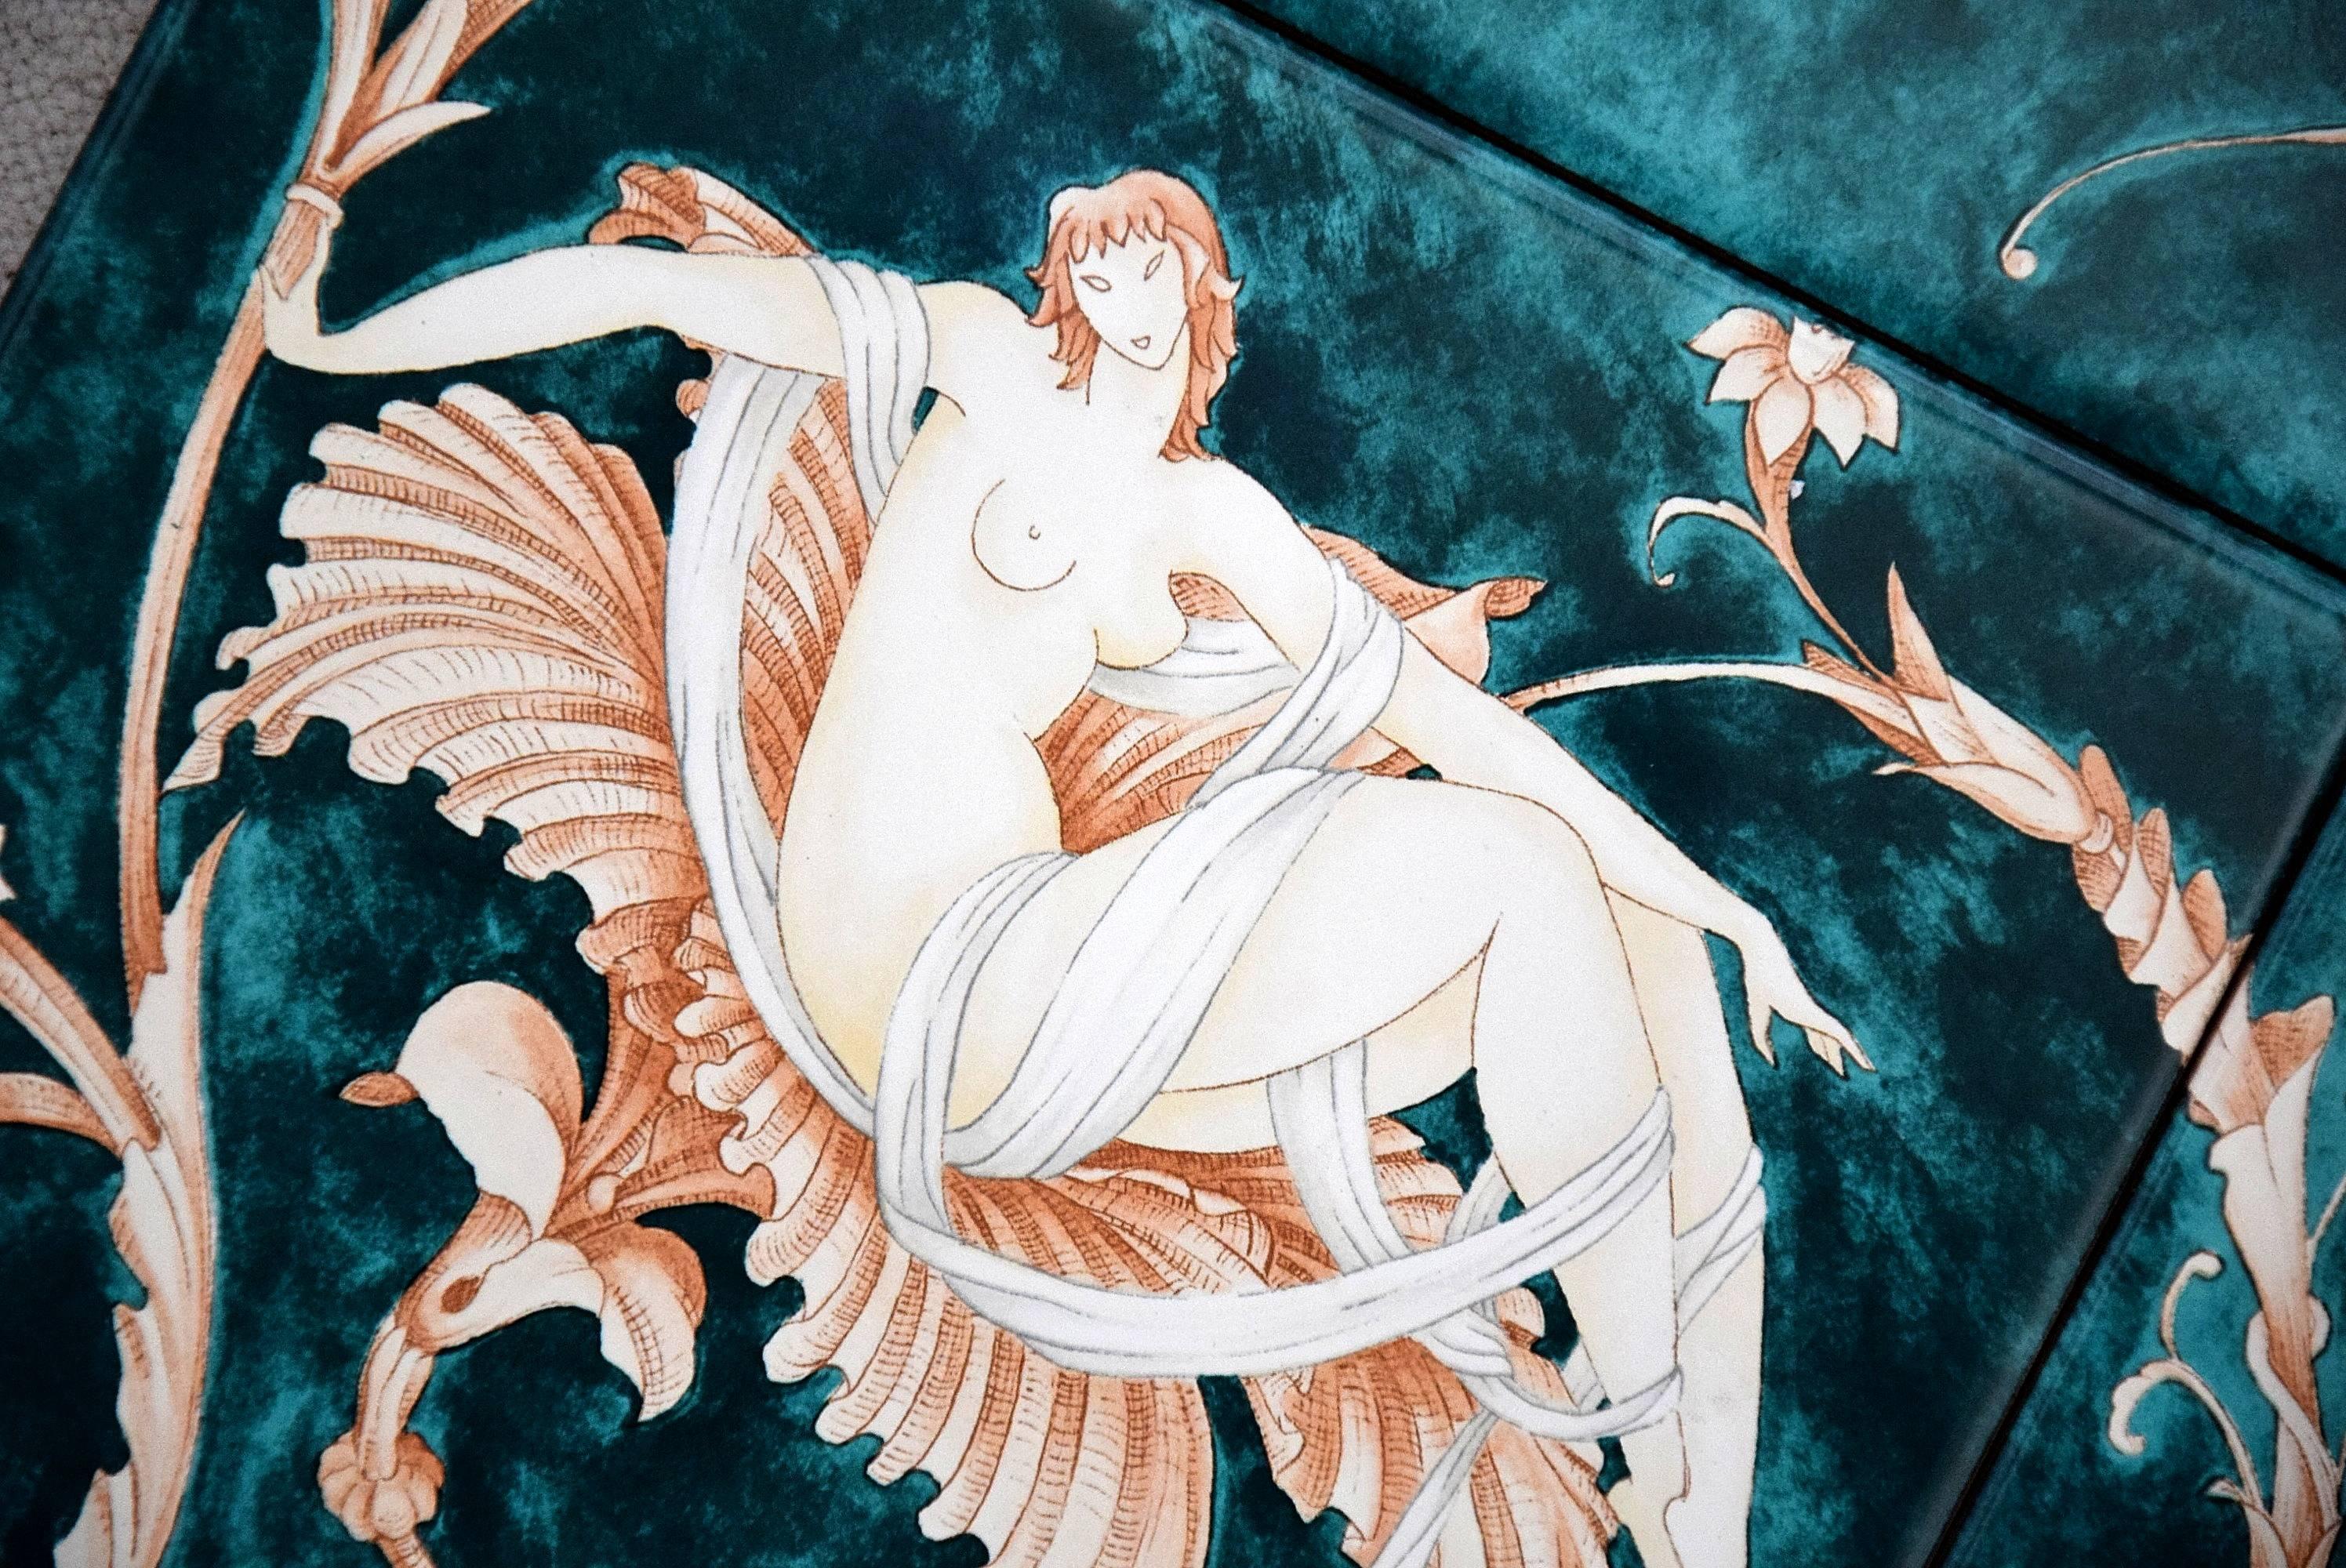 Art Nouveau Ceramic Tiles with 